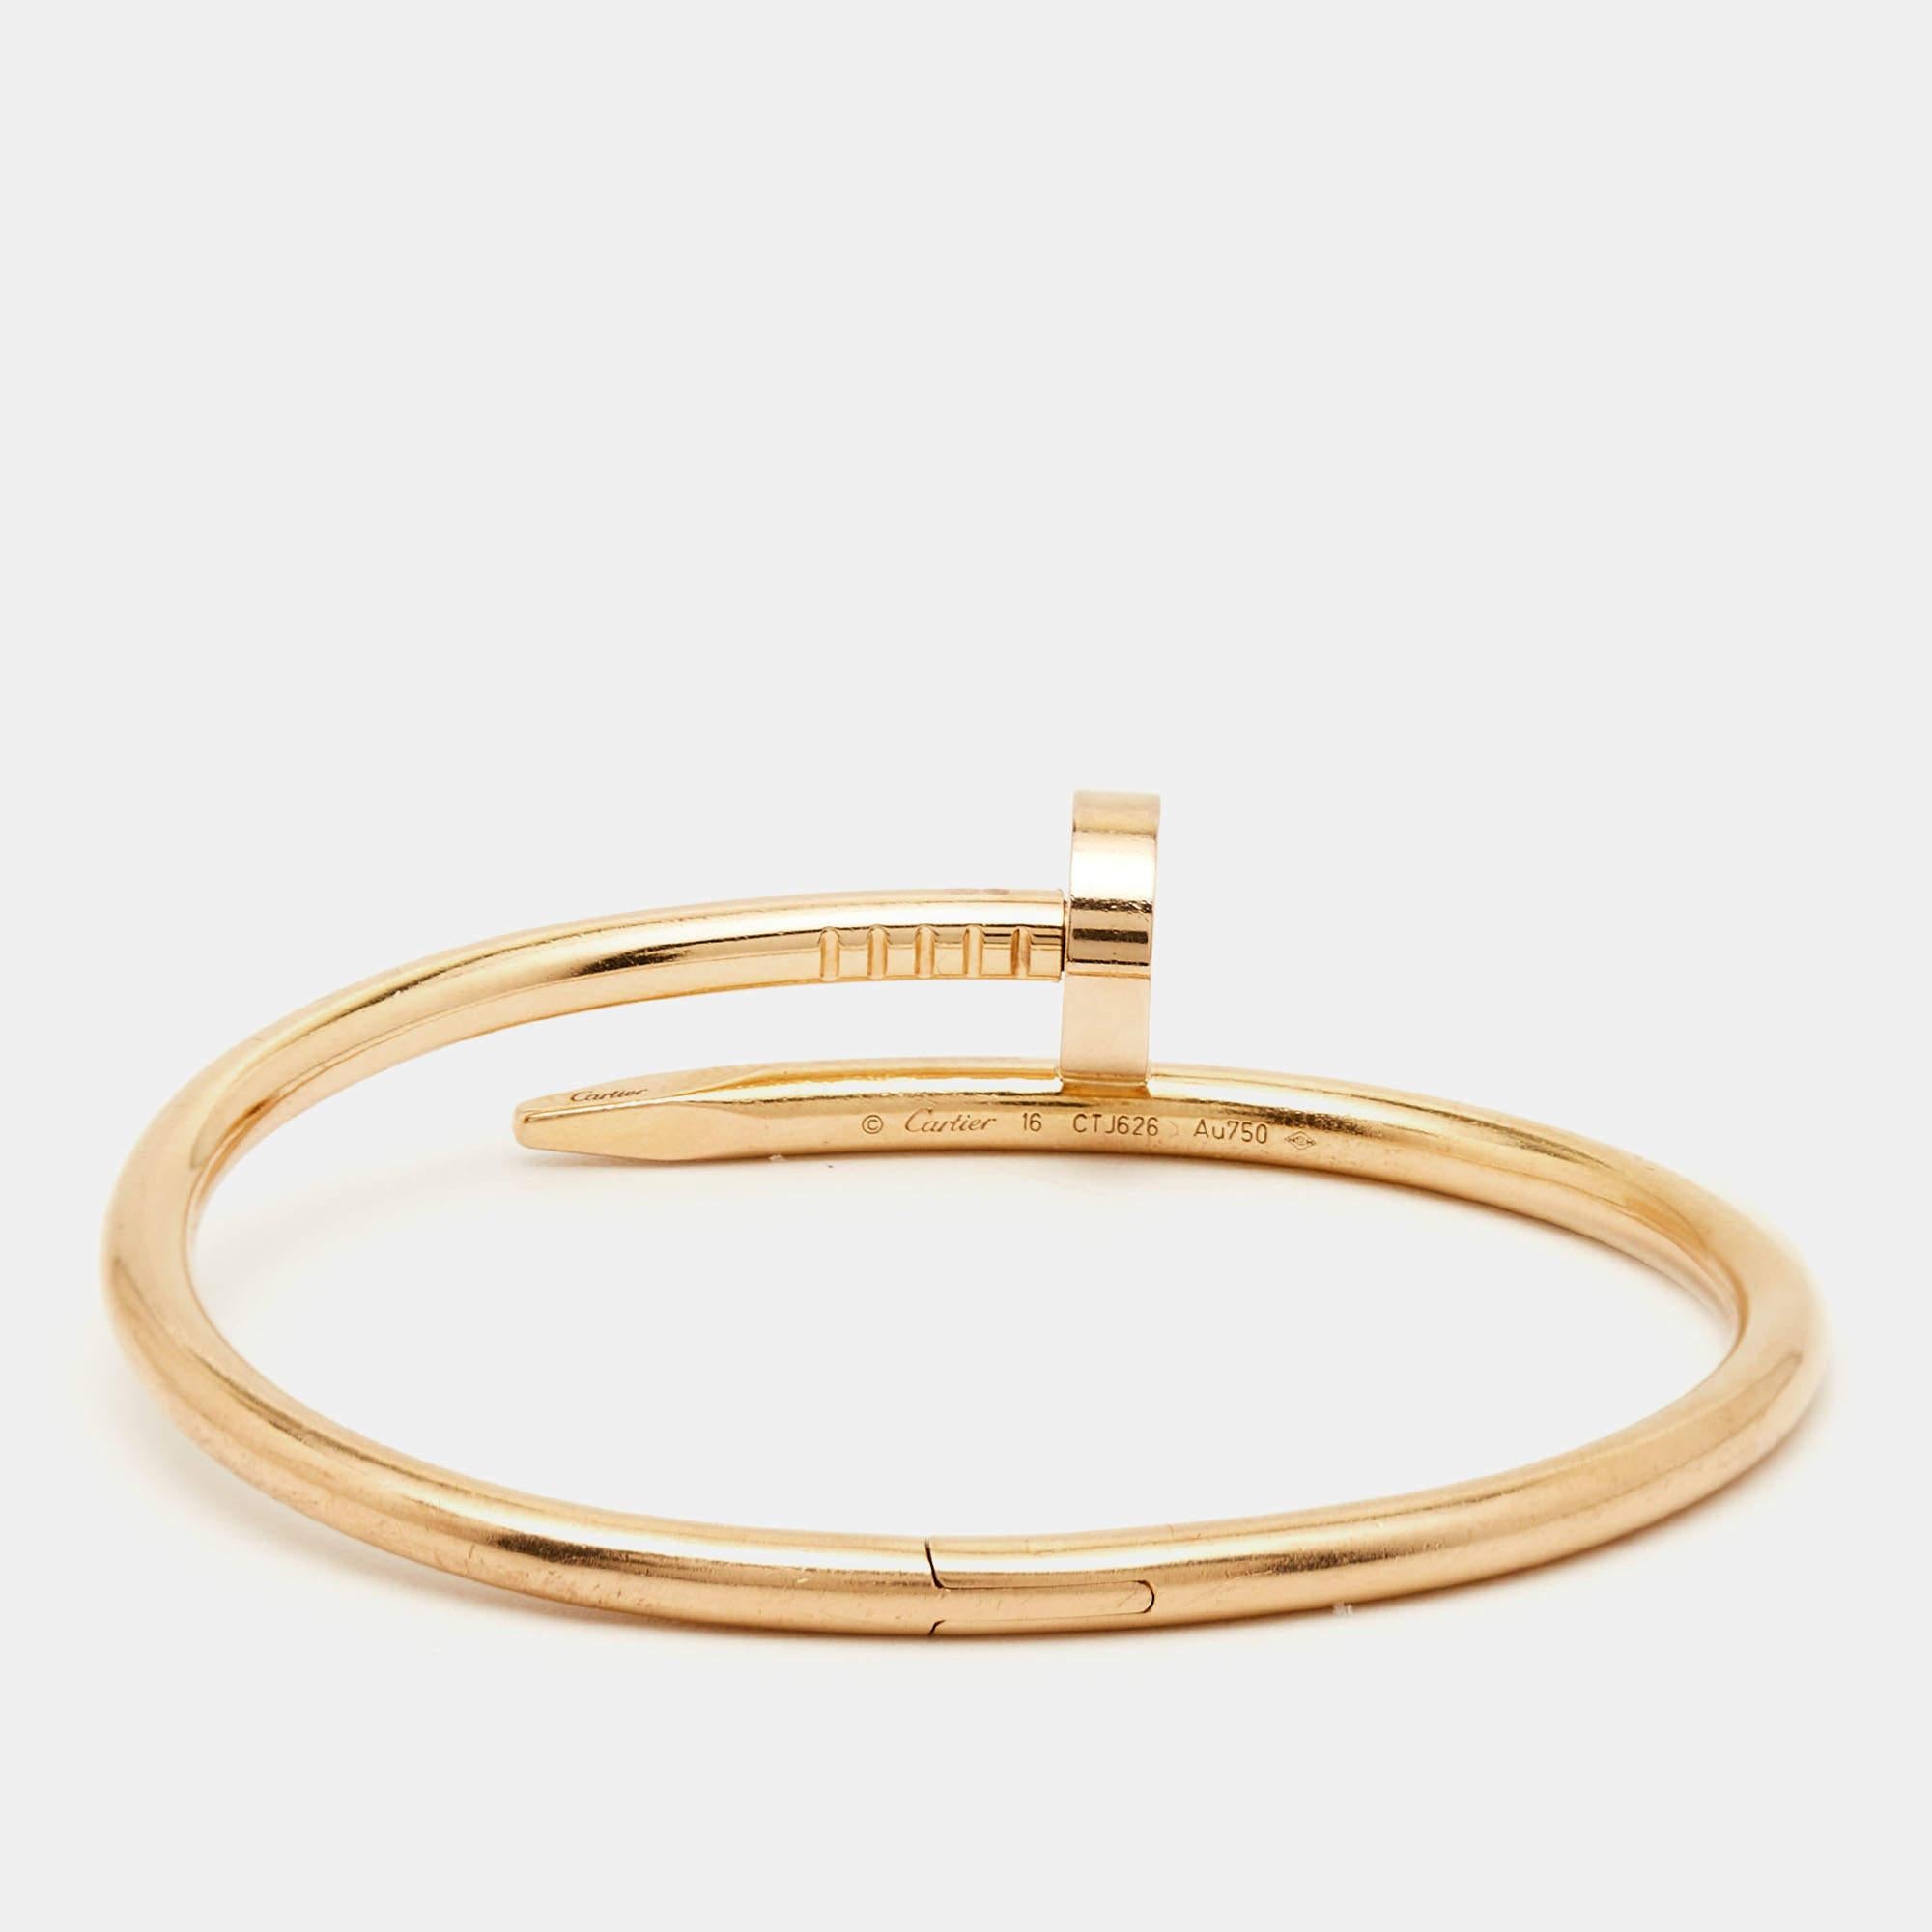 Das Armband Juste Un Clou von Cartier ist ein kultiges und luxuriöses Schmuckstück. Das schlichte und minimalistische Design aus glänzendem 18-karätigem Roségold fängt die Essenz eines Nagels ein, der in ein elegantes und unverwechselbares